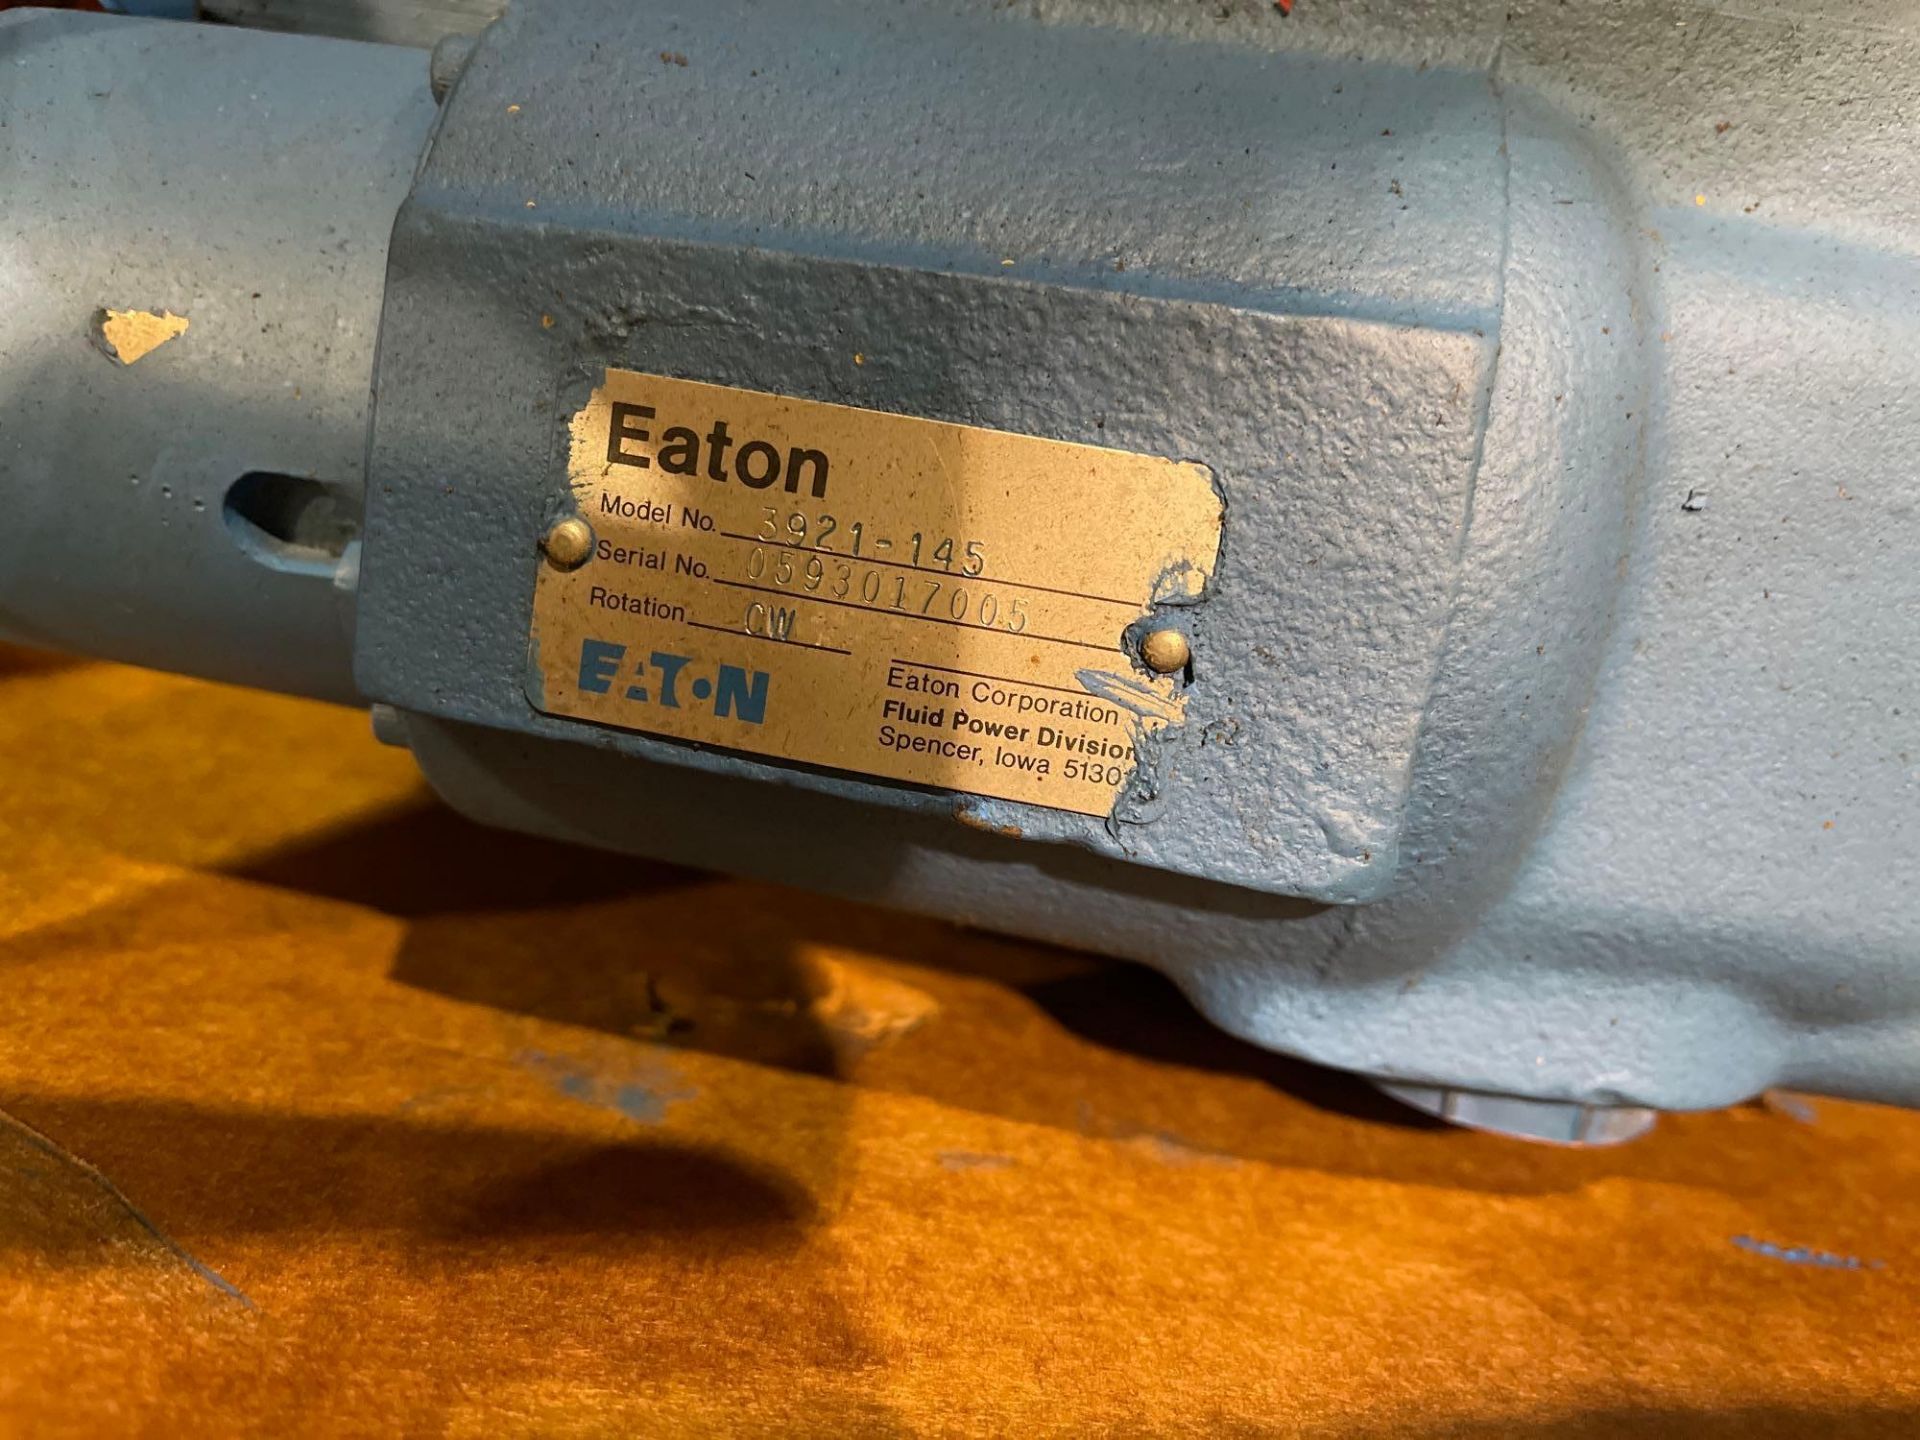 Eaton Hydraulic Hydrostat Transmission - Image 2 of 3